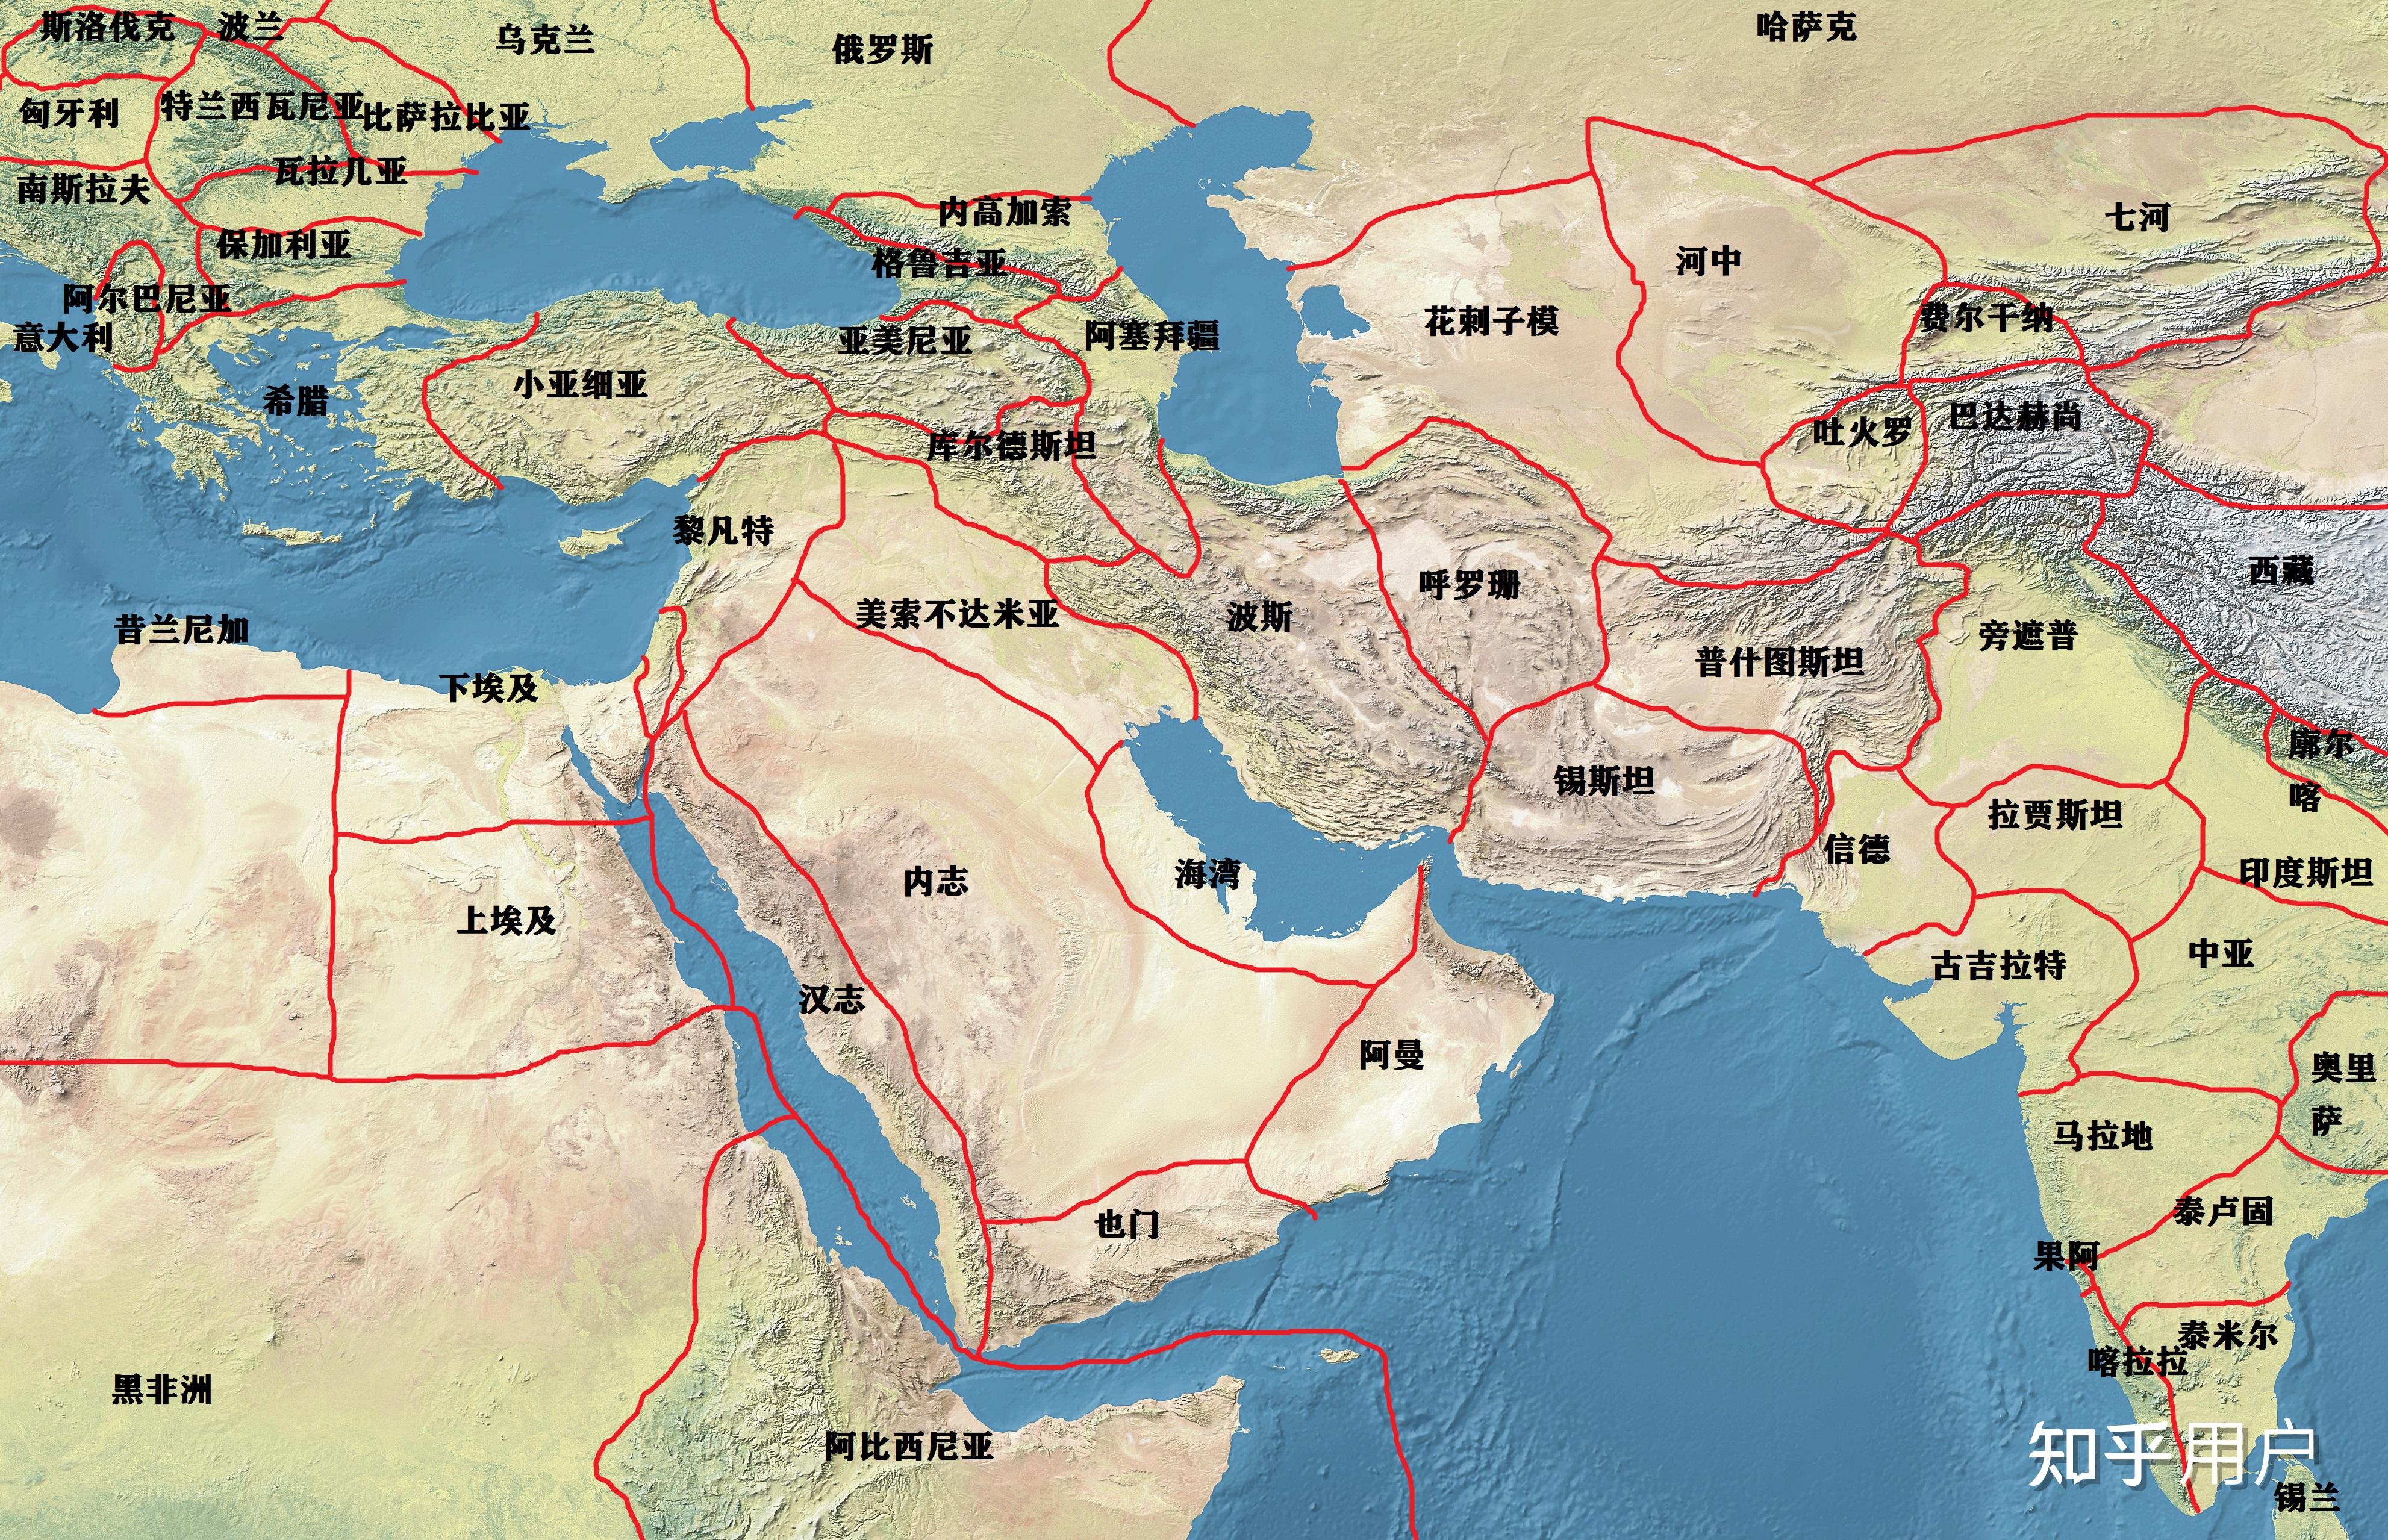 简述中东地区地理位置的重要性? 